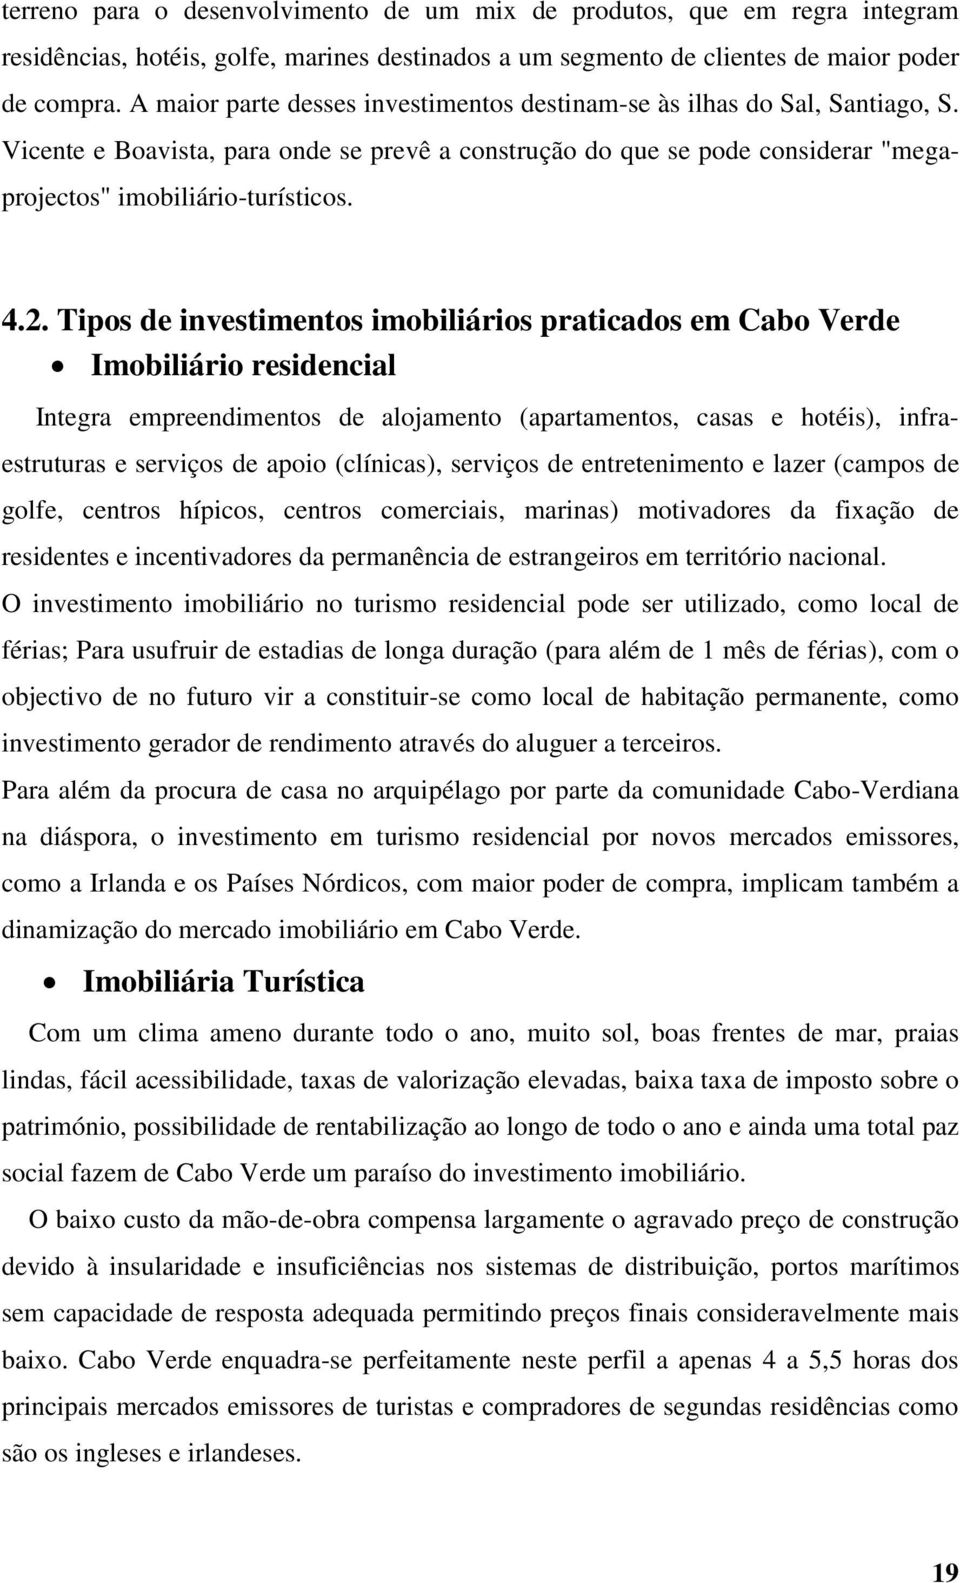 Tipos de investimentos imobiliários praticados em Cabo Verde Imobiliário residencial Integra empreendimentos de alojamento (apartamentos, casas e hotéis), infraestruturas e serviços de apoio